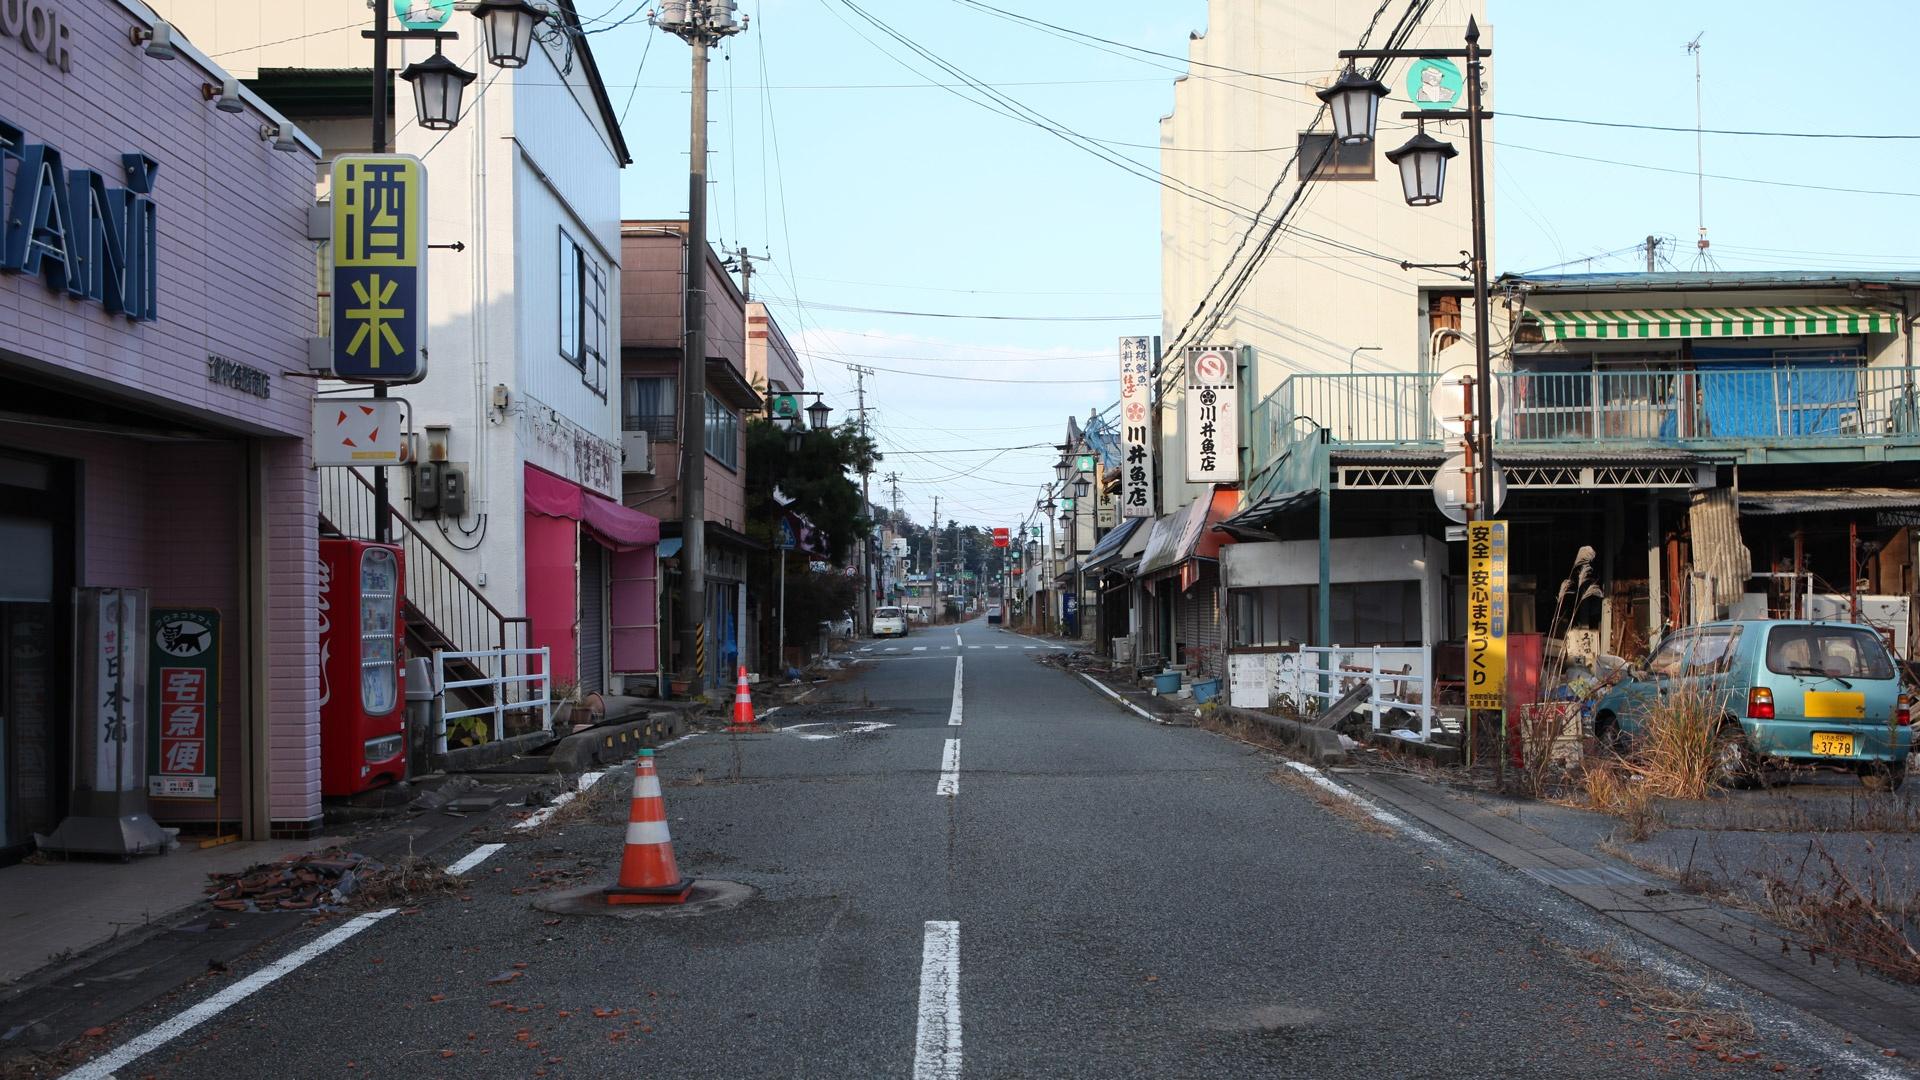 A street in Fukushima, Japan.